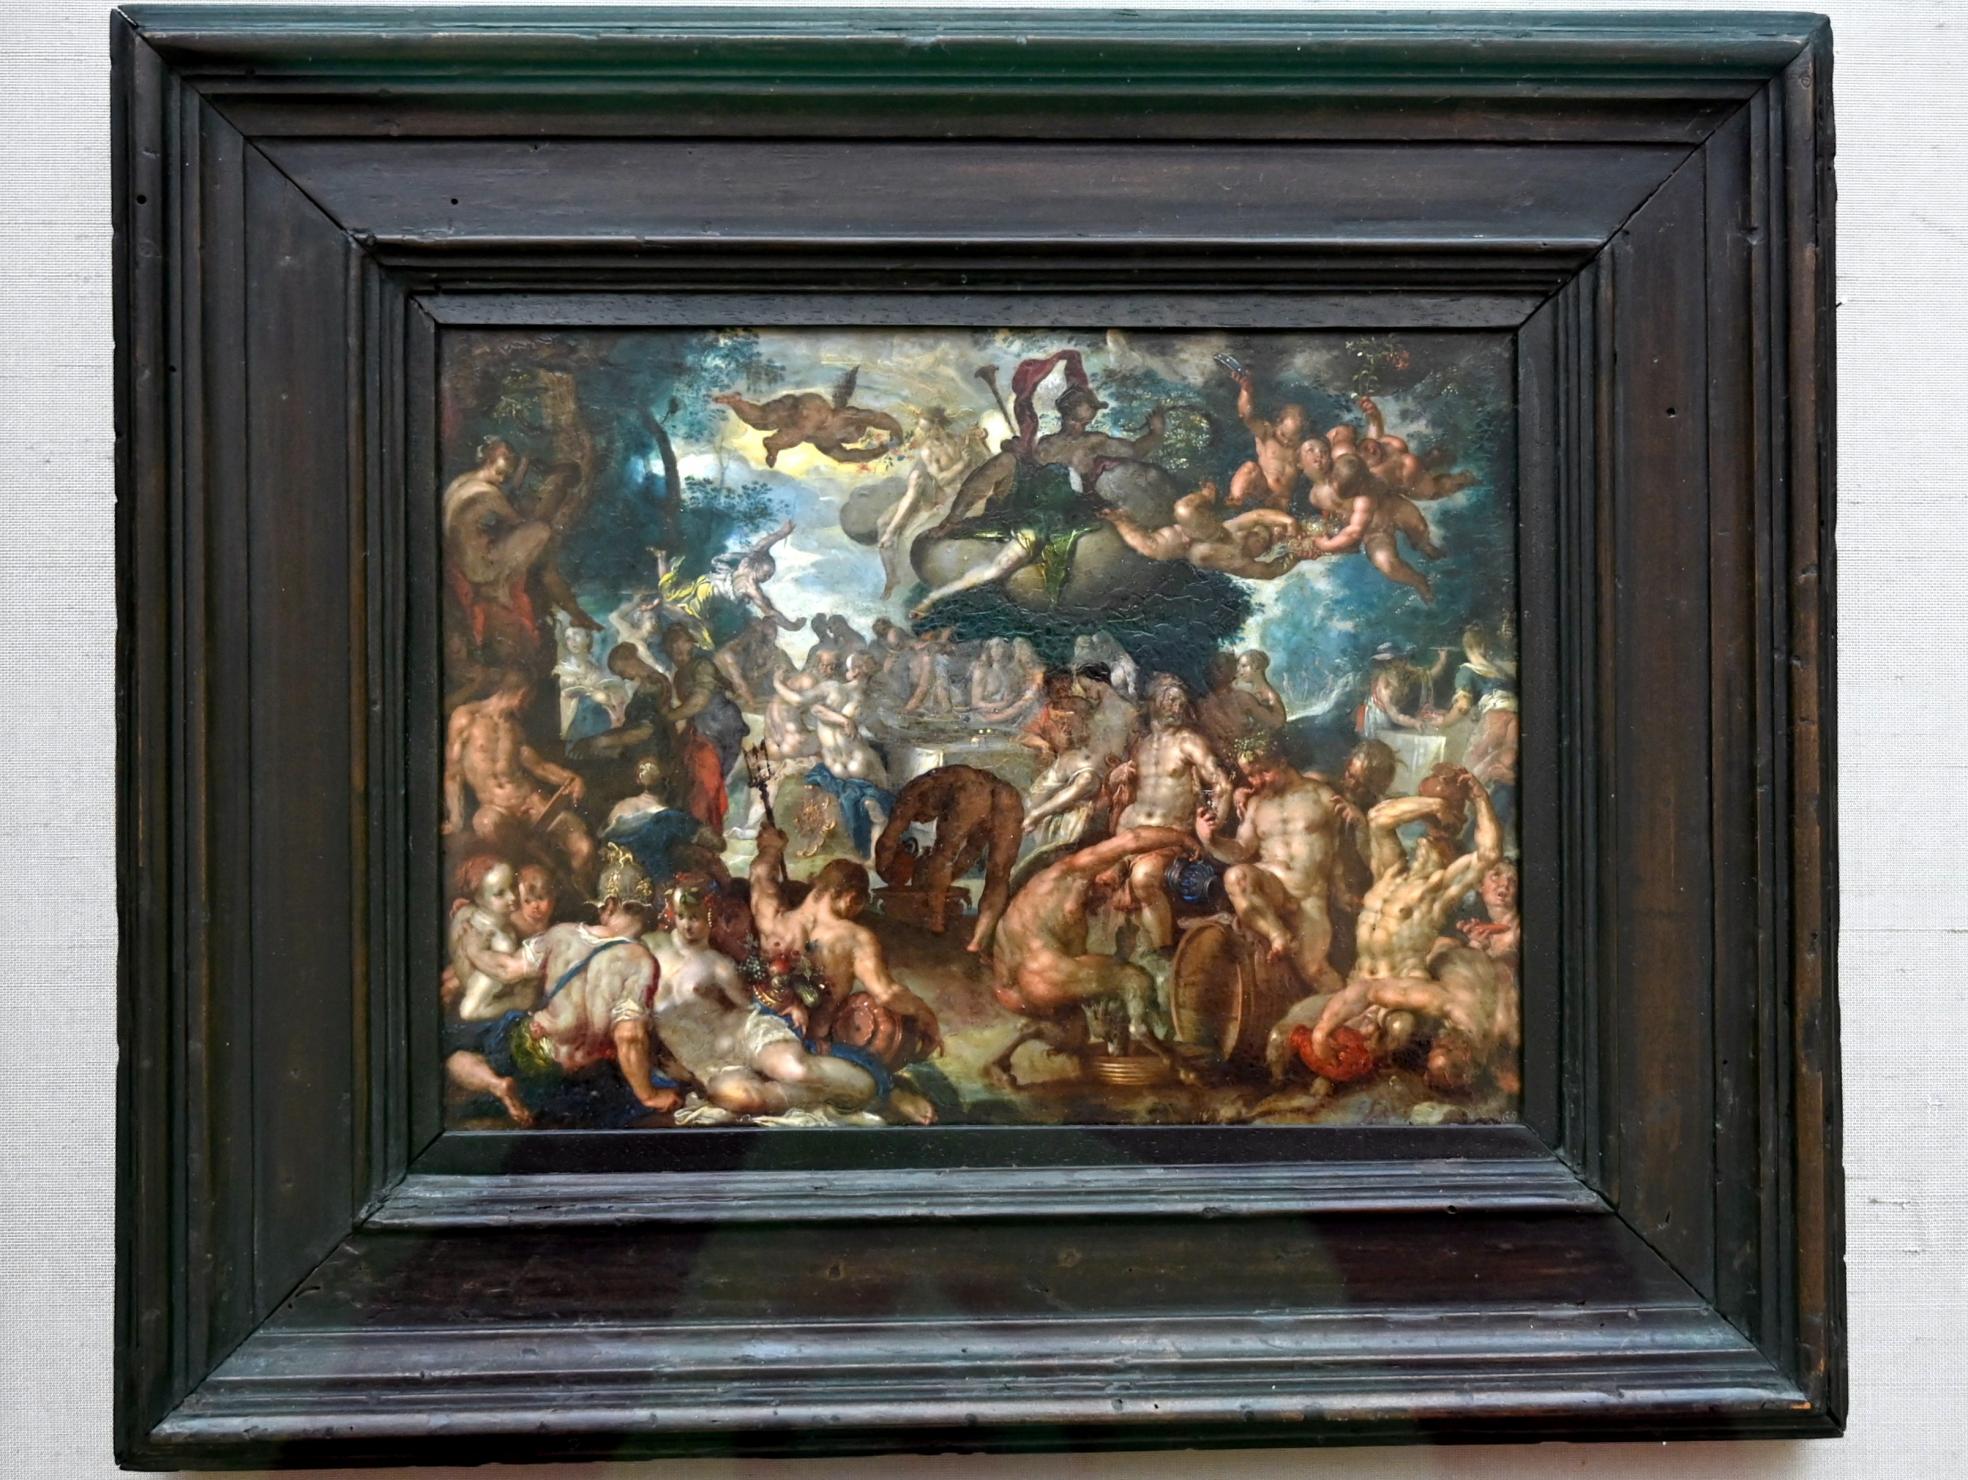 Joachim Anthonisz. Wtewael (1595–1615), Die Hochzeit von Peleus und Thetis, München, Alte Pinakothek, Obergeschoss Kabinett 13, um 1592–1600, Bild 1/2